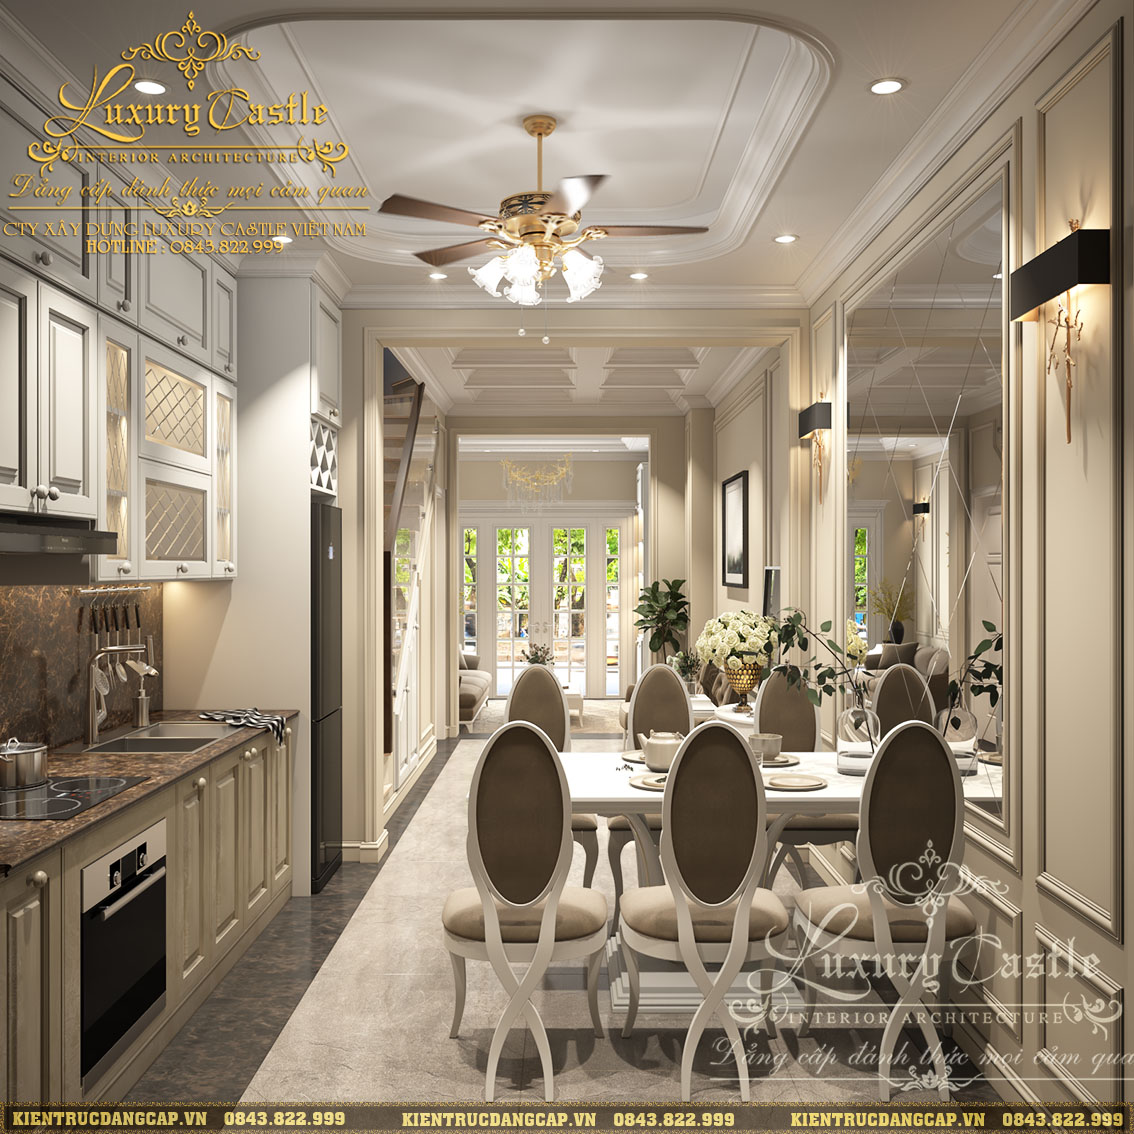 Thiết kế nội thất phòng bếp nhà ống tân cổ điển sang trọng mang lại cho bạn một không gian đậm chất cổ điển cùng với độ sang trọng hiện đại. Một không gian hoàn hảo cho sự kết hợp giữa truyền thống và hiện đại.